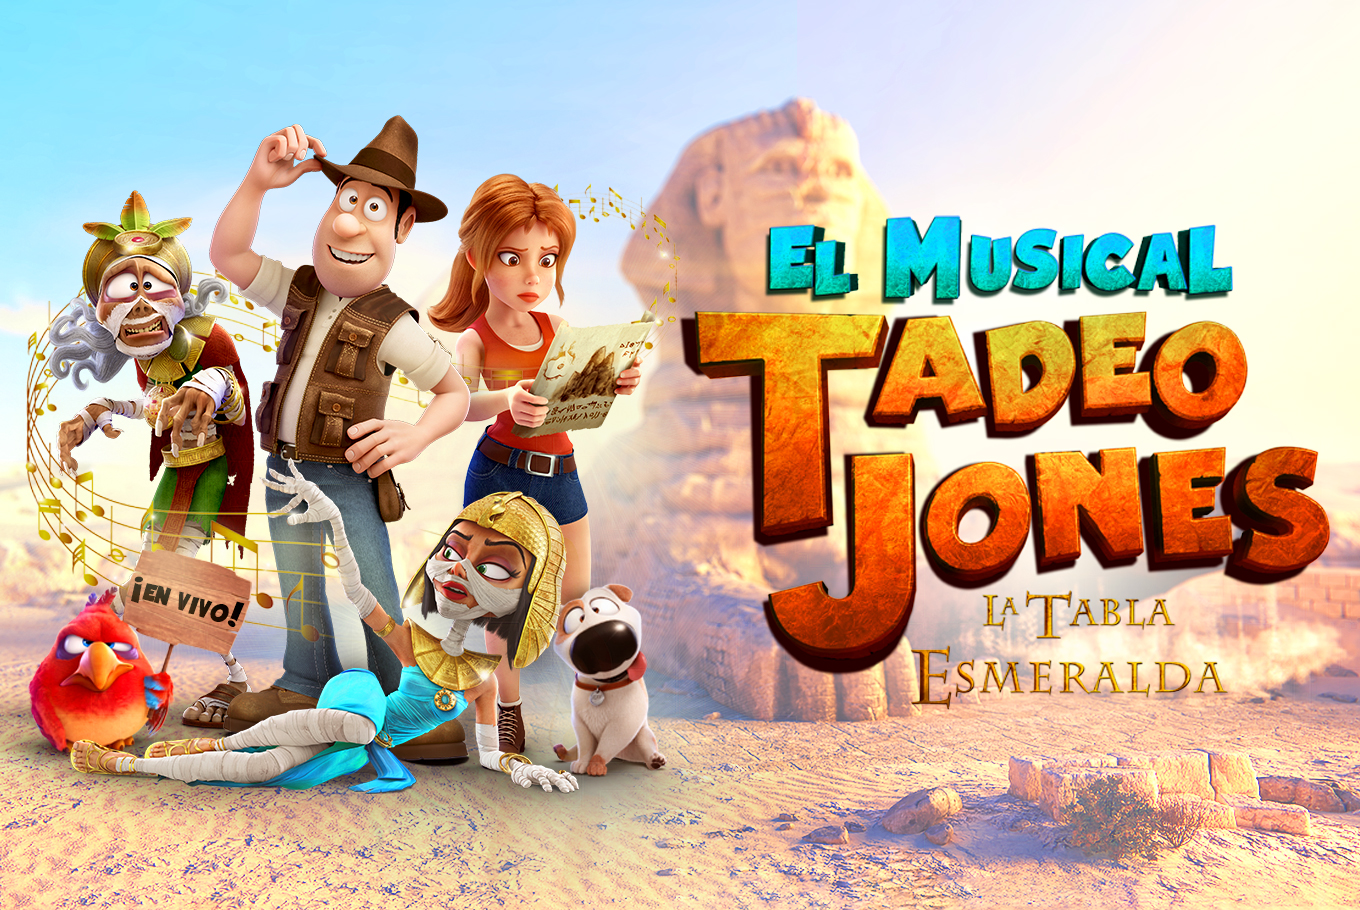 El musical de Tadeo Jones: la tabla esmeralda